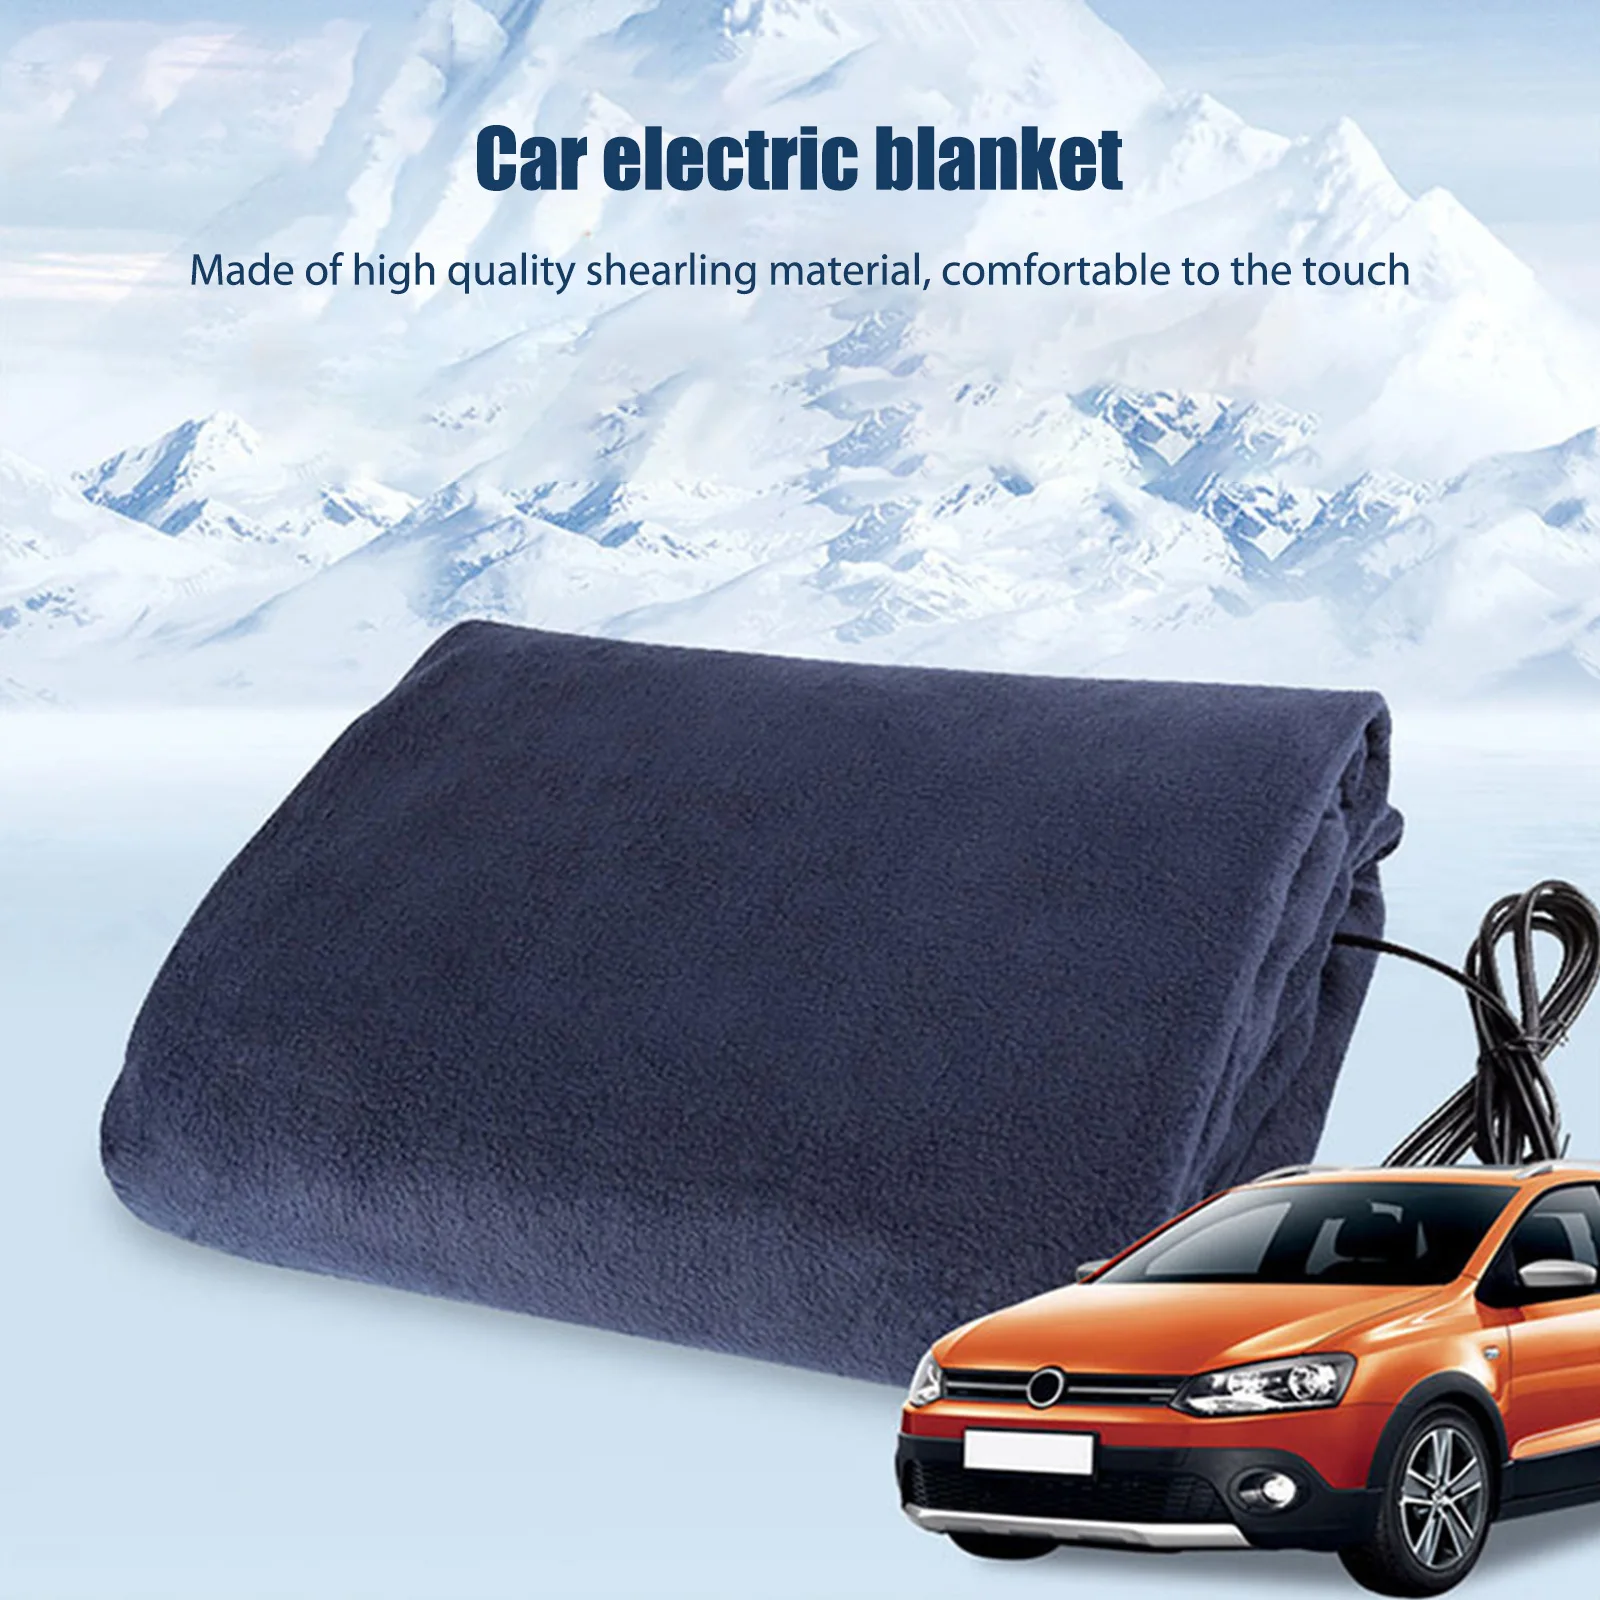 

Мягкое одеяло с подогревом 12 В, флисовое автомобильное одеяло для холодной погоды, 2 тепловых уровня, электрическое одеяло, портативное быстрое Отопление для автомобиля, 145x100 см